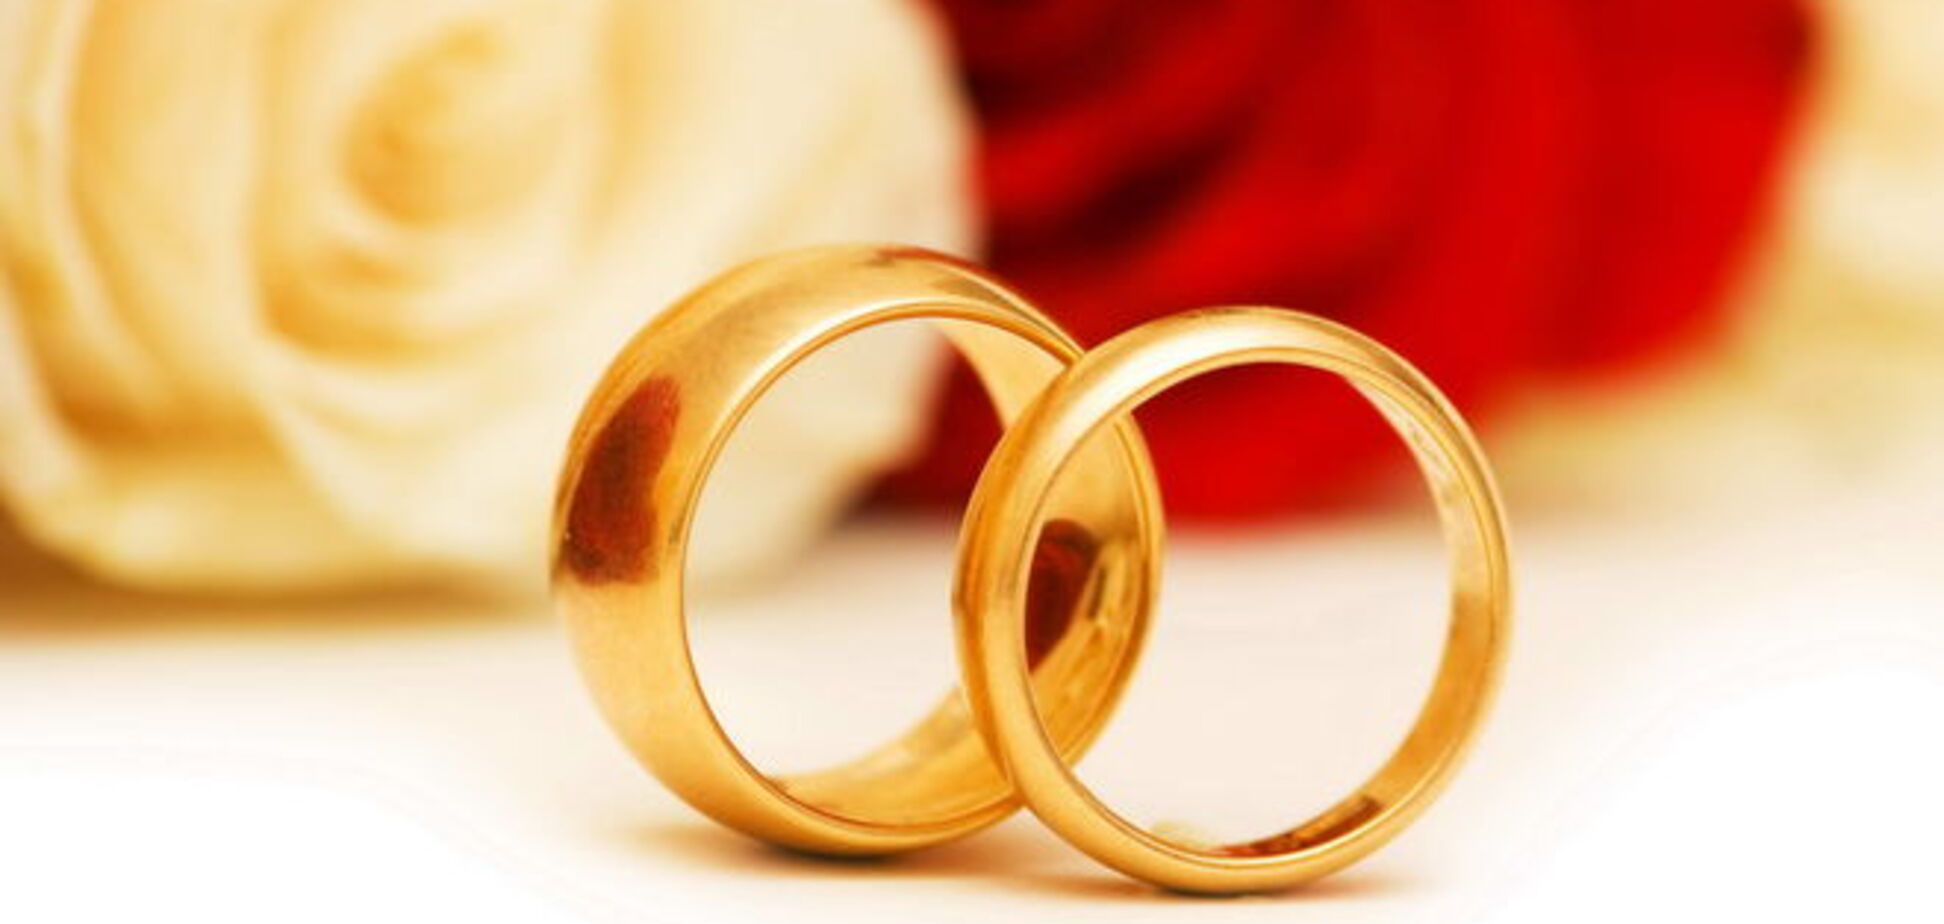 Нестареющая любовь: в Великобритании прошла свадьба самых старых молодоженов в мире